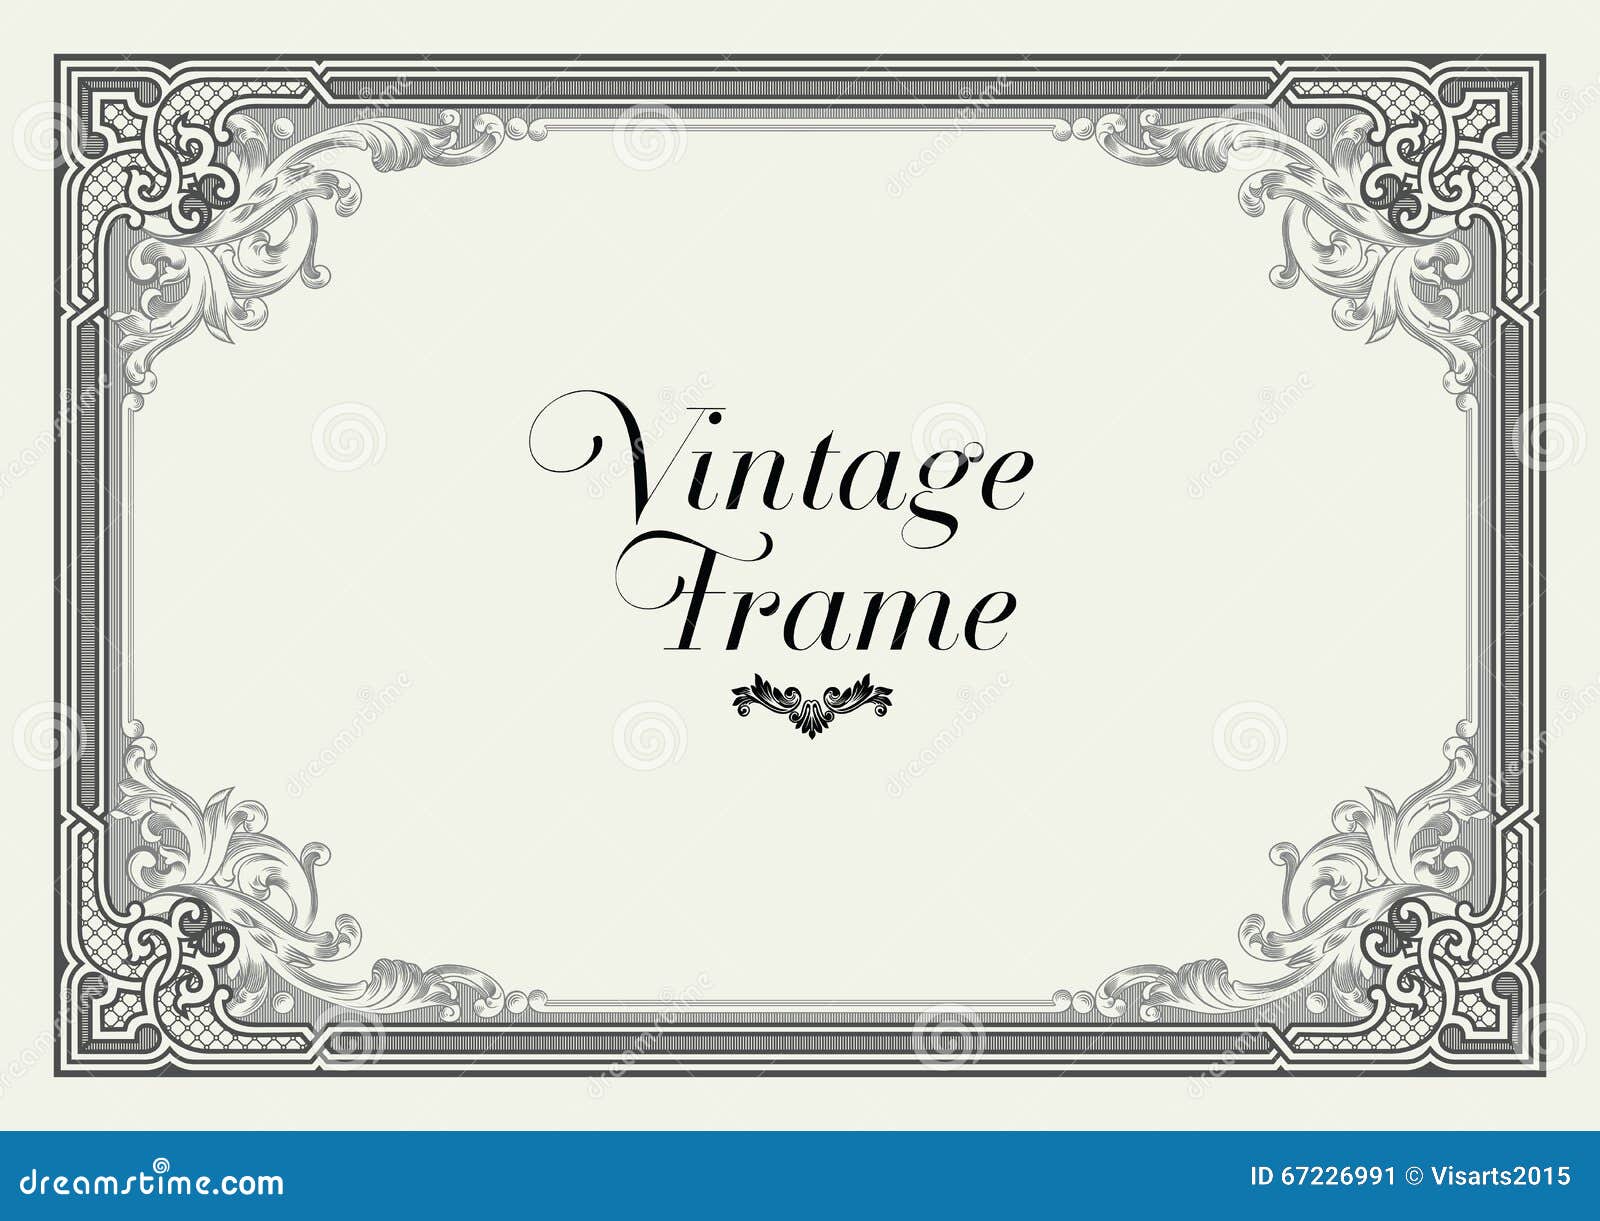 Download Vintage Ornament Border. Decorative Floral Frame Vector ...